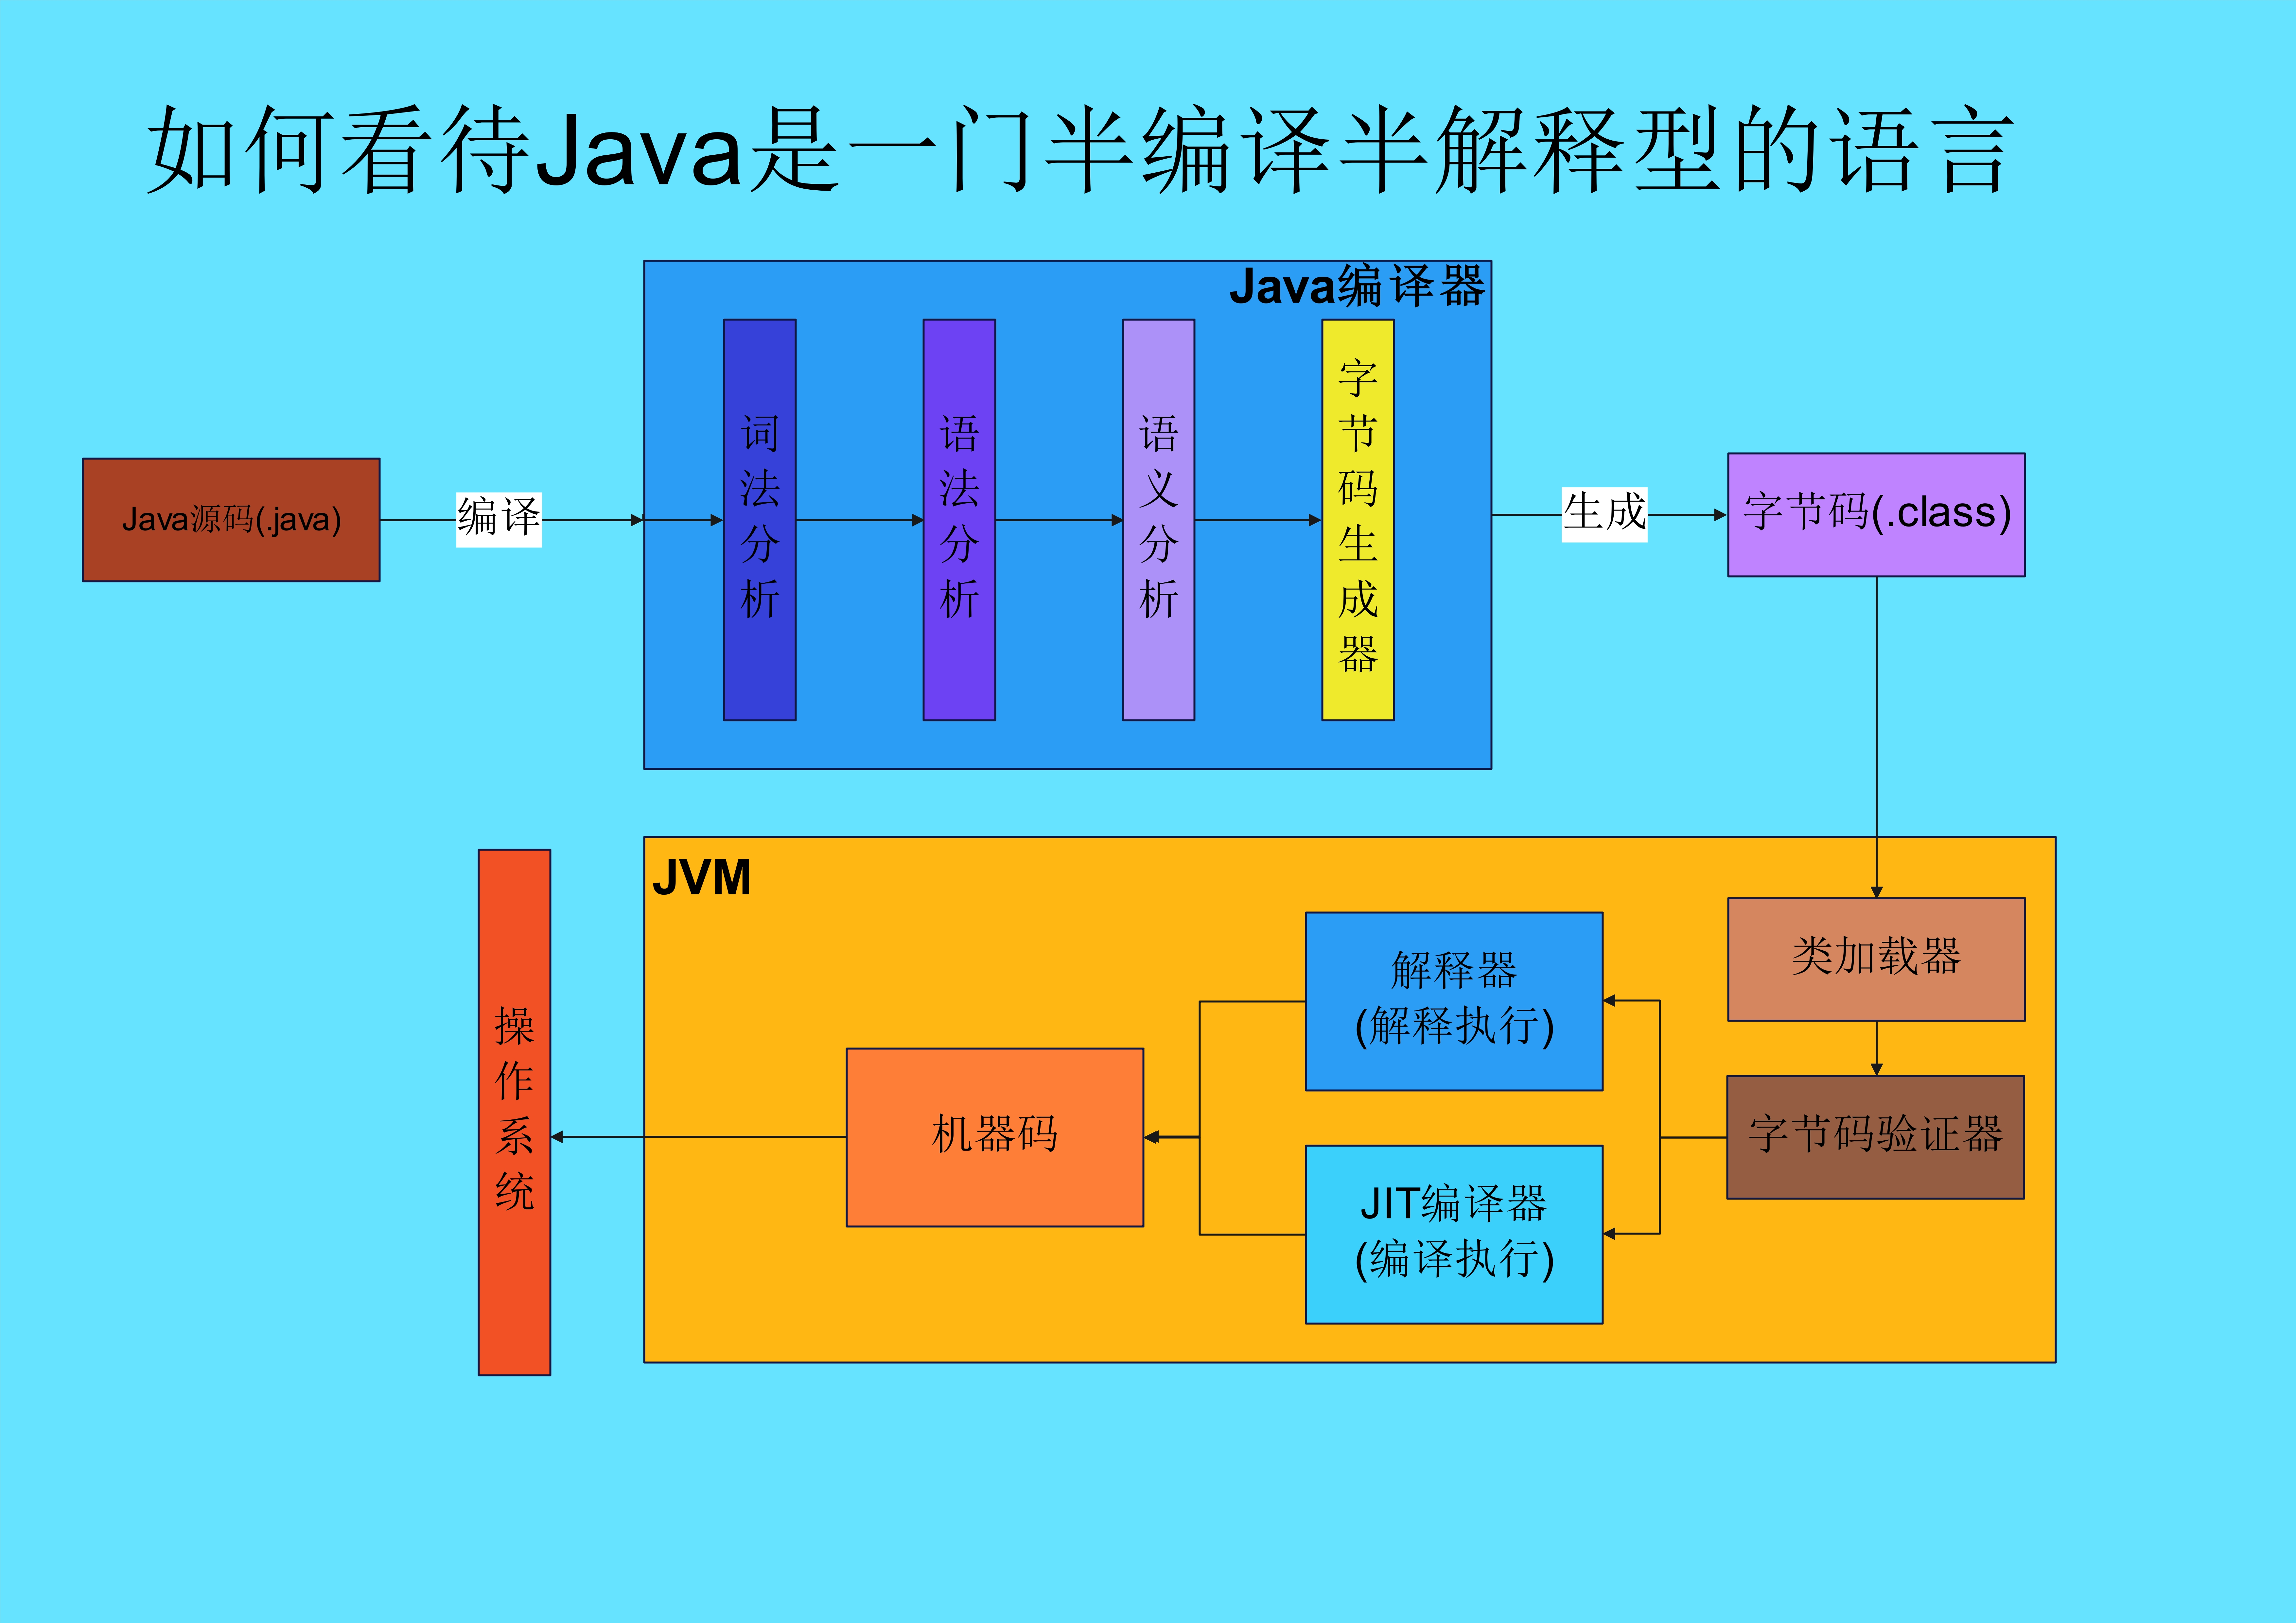 如何看待Java是一门半编译半解释型的语言